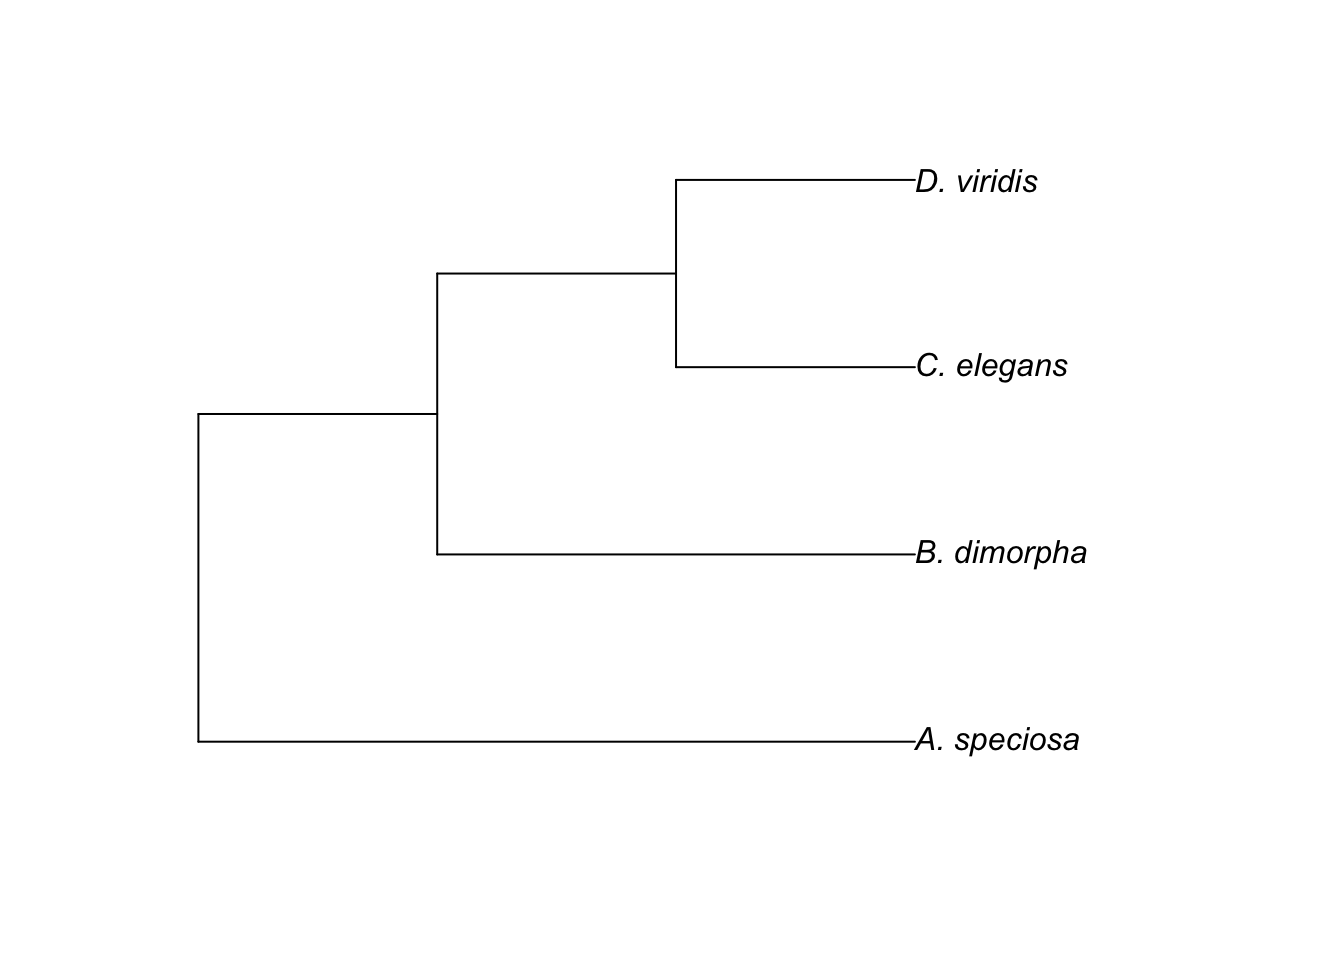 Rooted tree showing relationsip between 4 species.